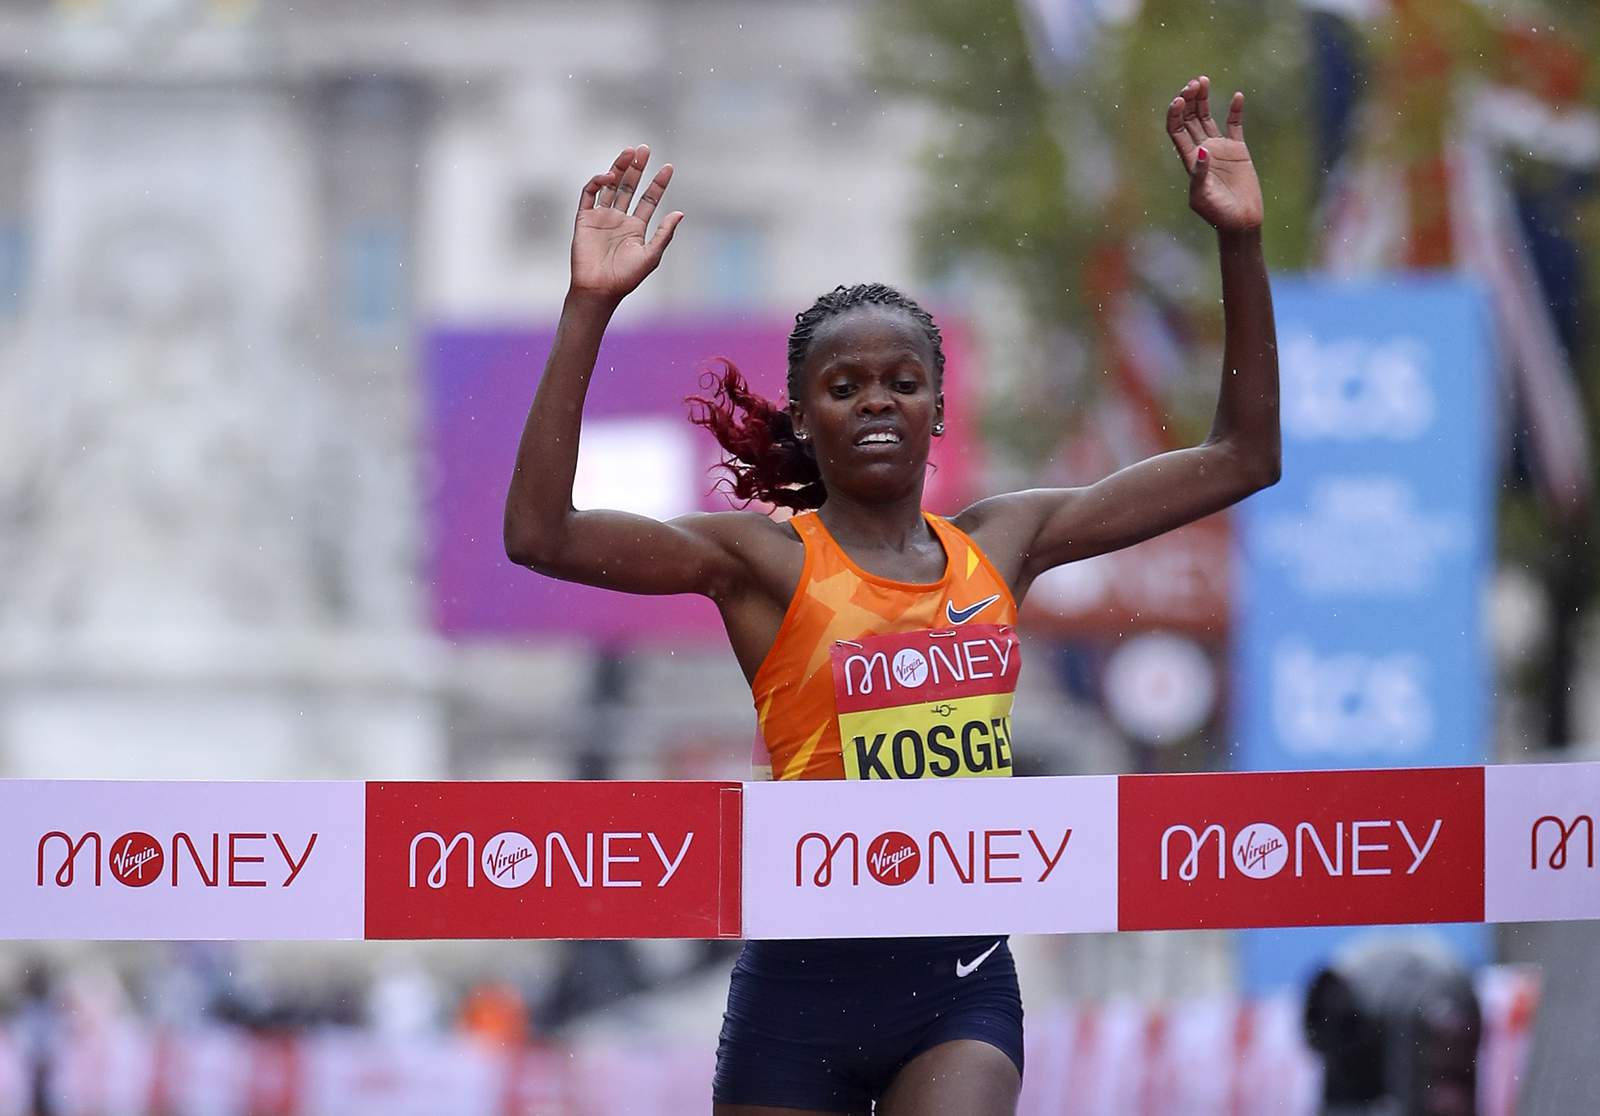 Kitata upsets Kipchoge to win London Marathon